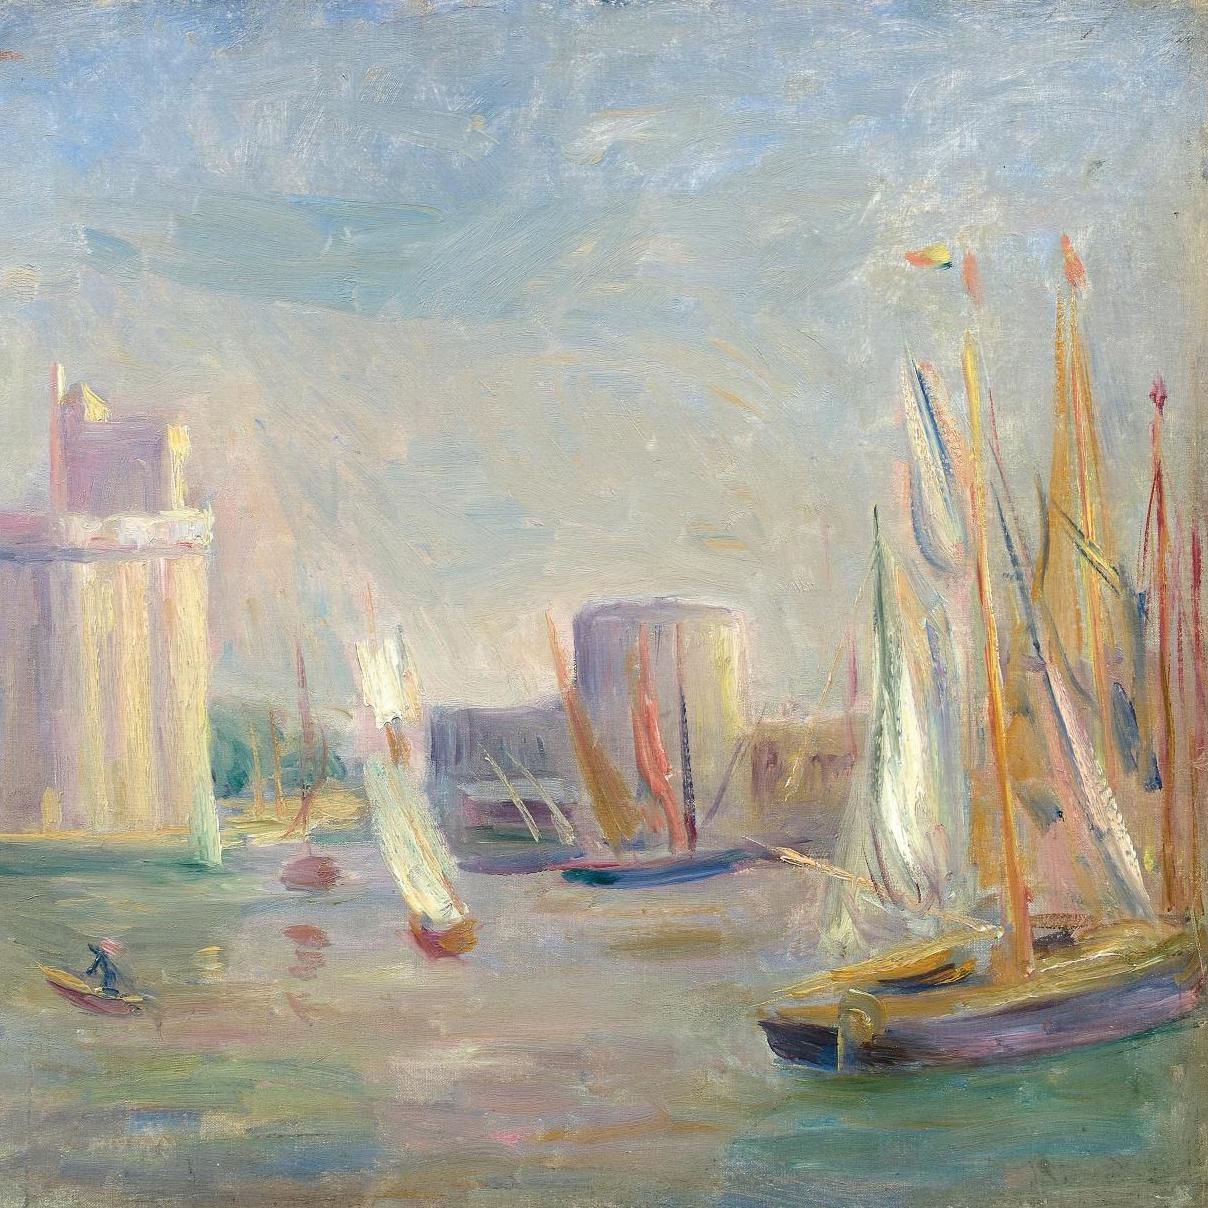 La Rochelle vu par Pierre-Auguste Renoir